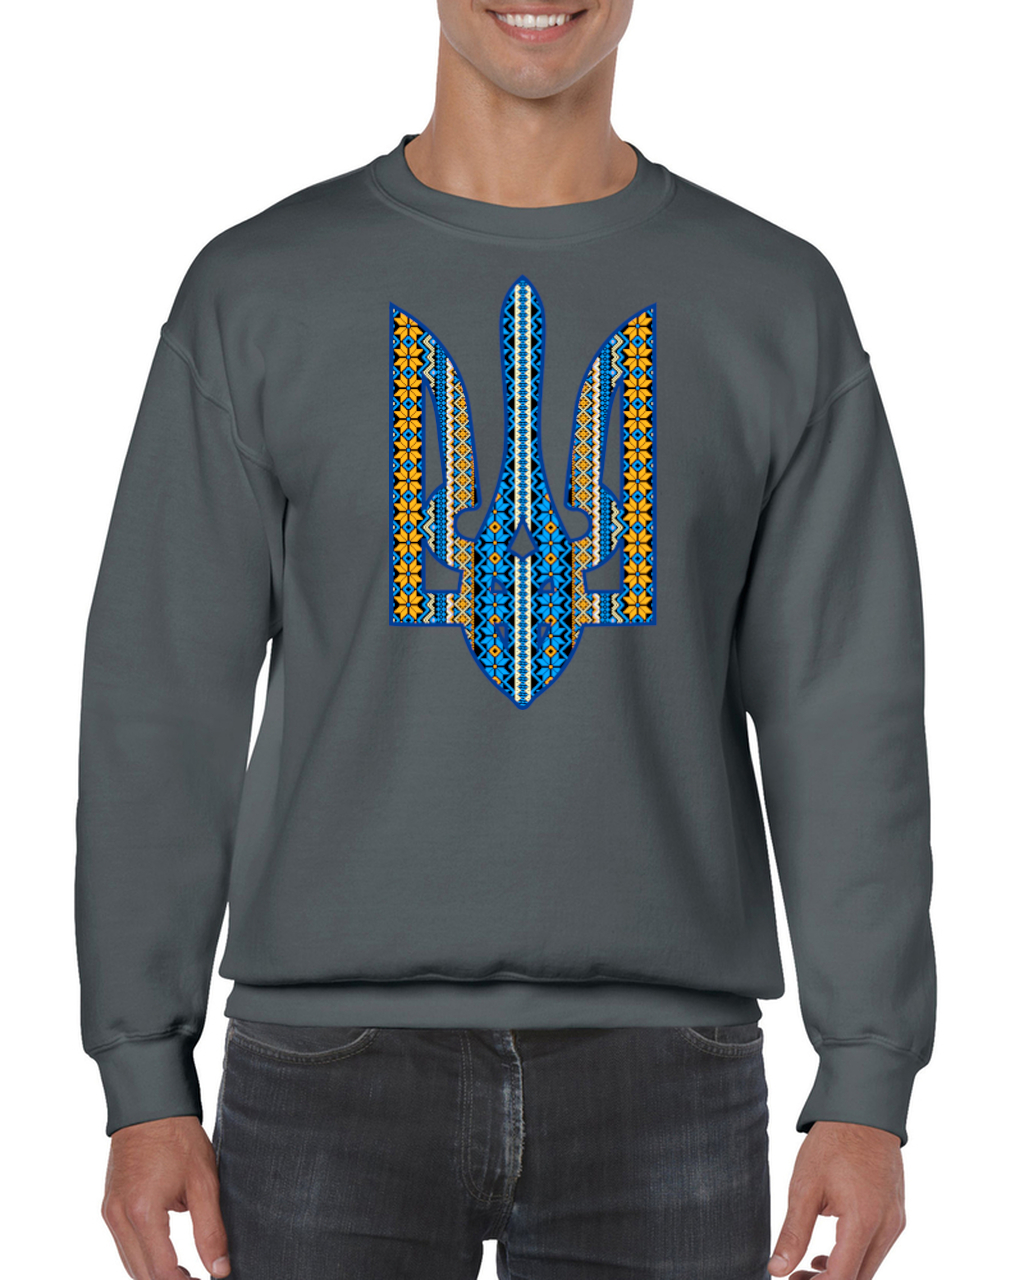 Adult unisex sweatshirt "Ornate Tryzub"